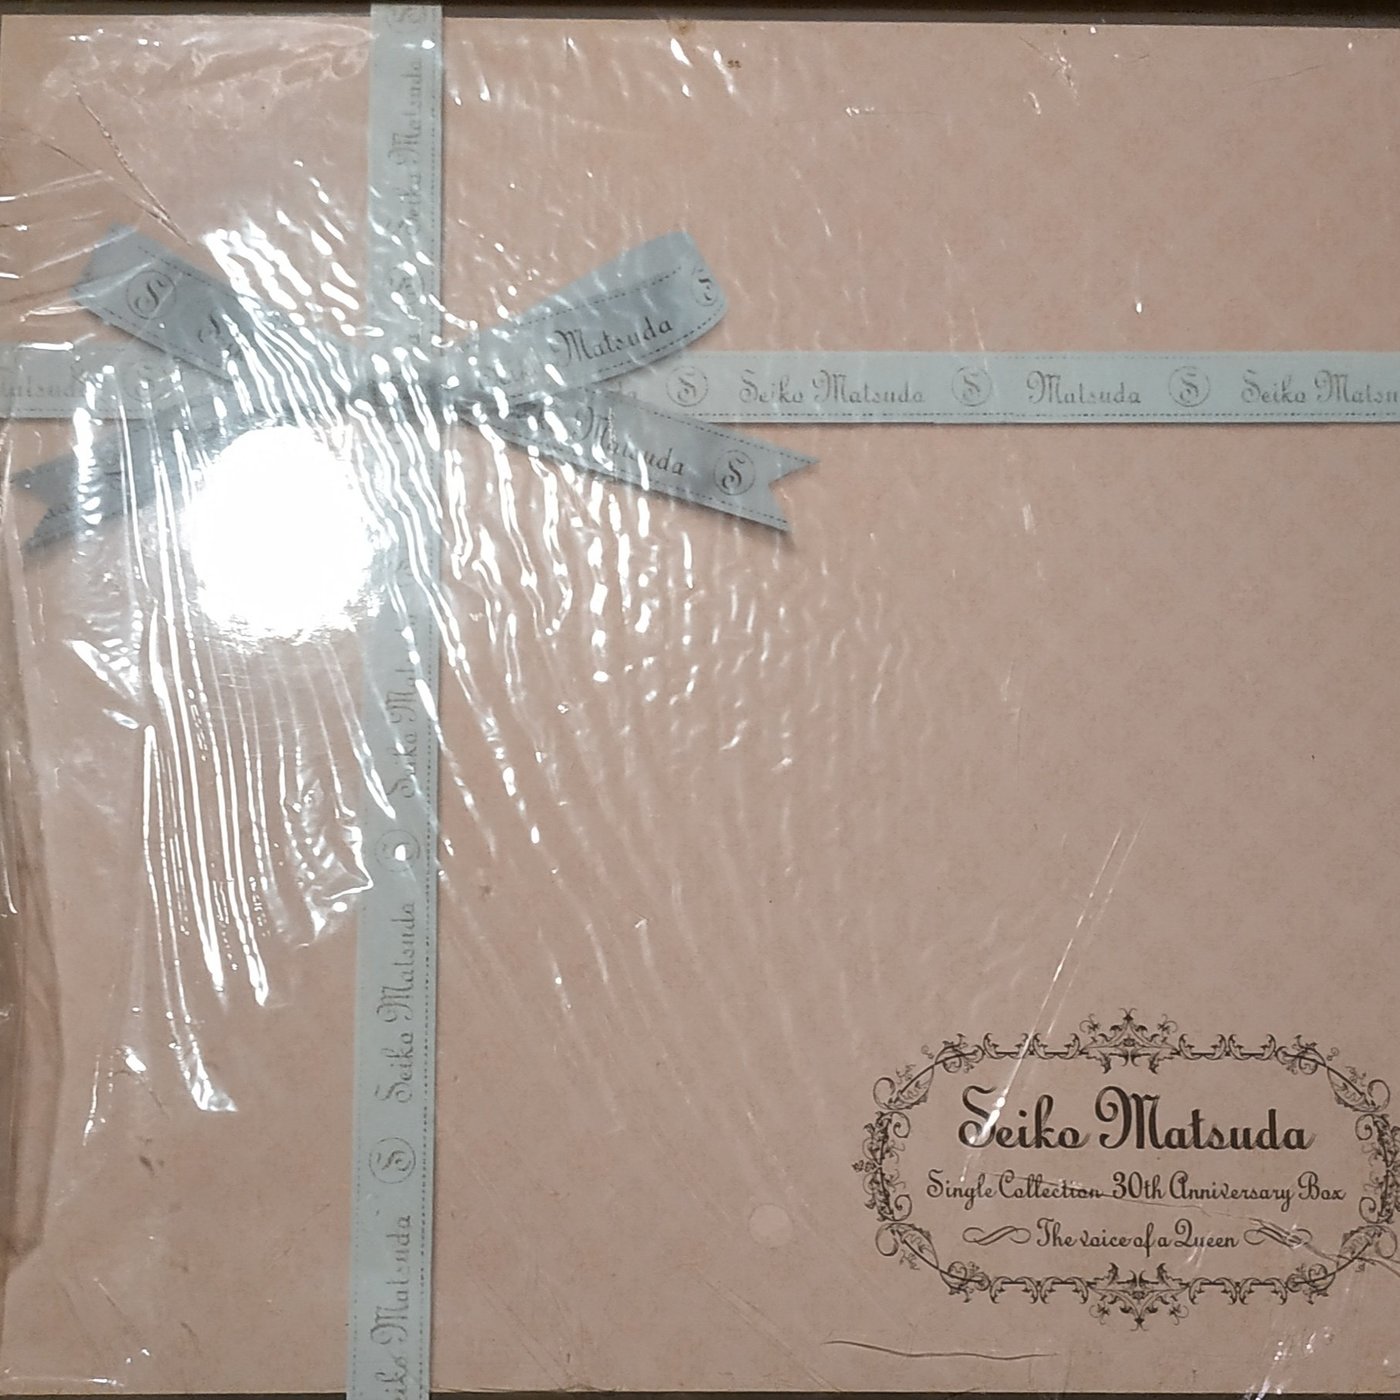 日版全新已絕版 --- 松田聖子 Seiko Matsuda - 30th Ann Single Box